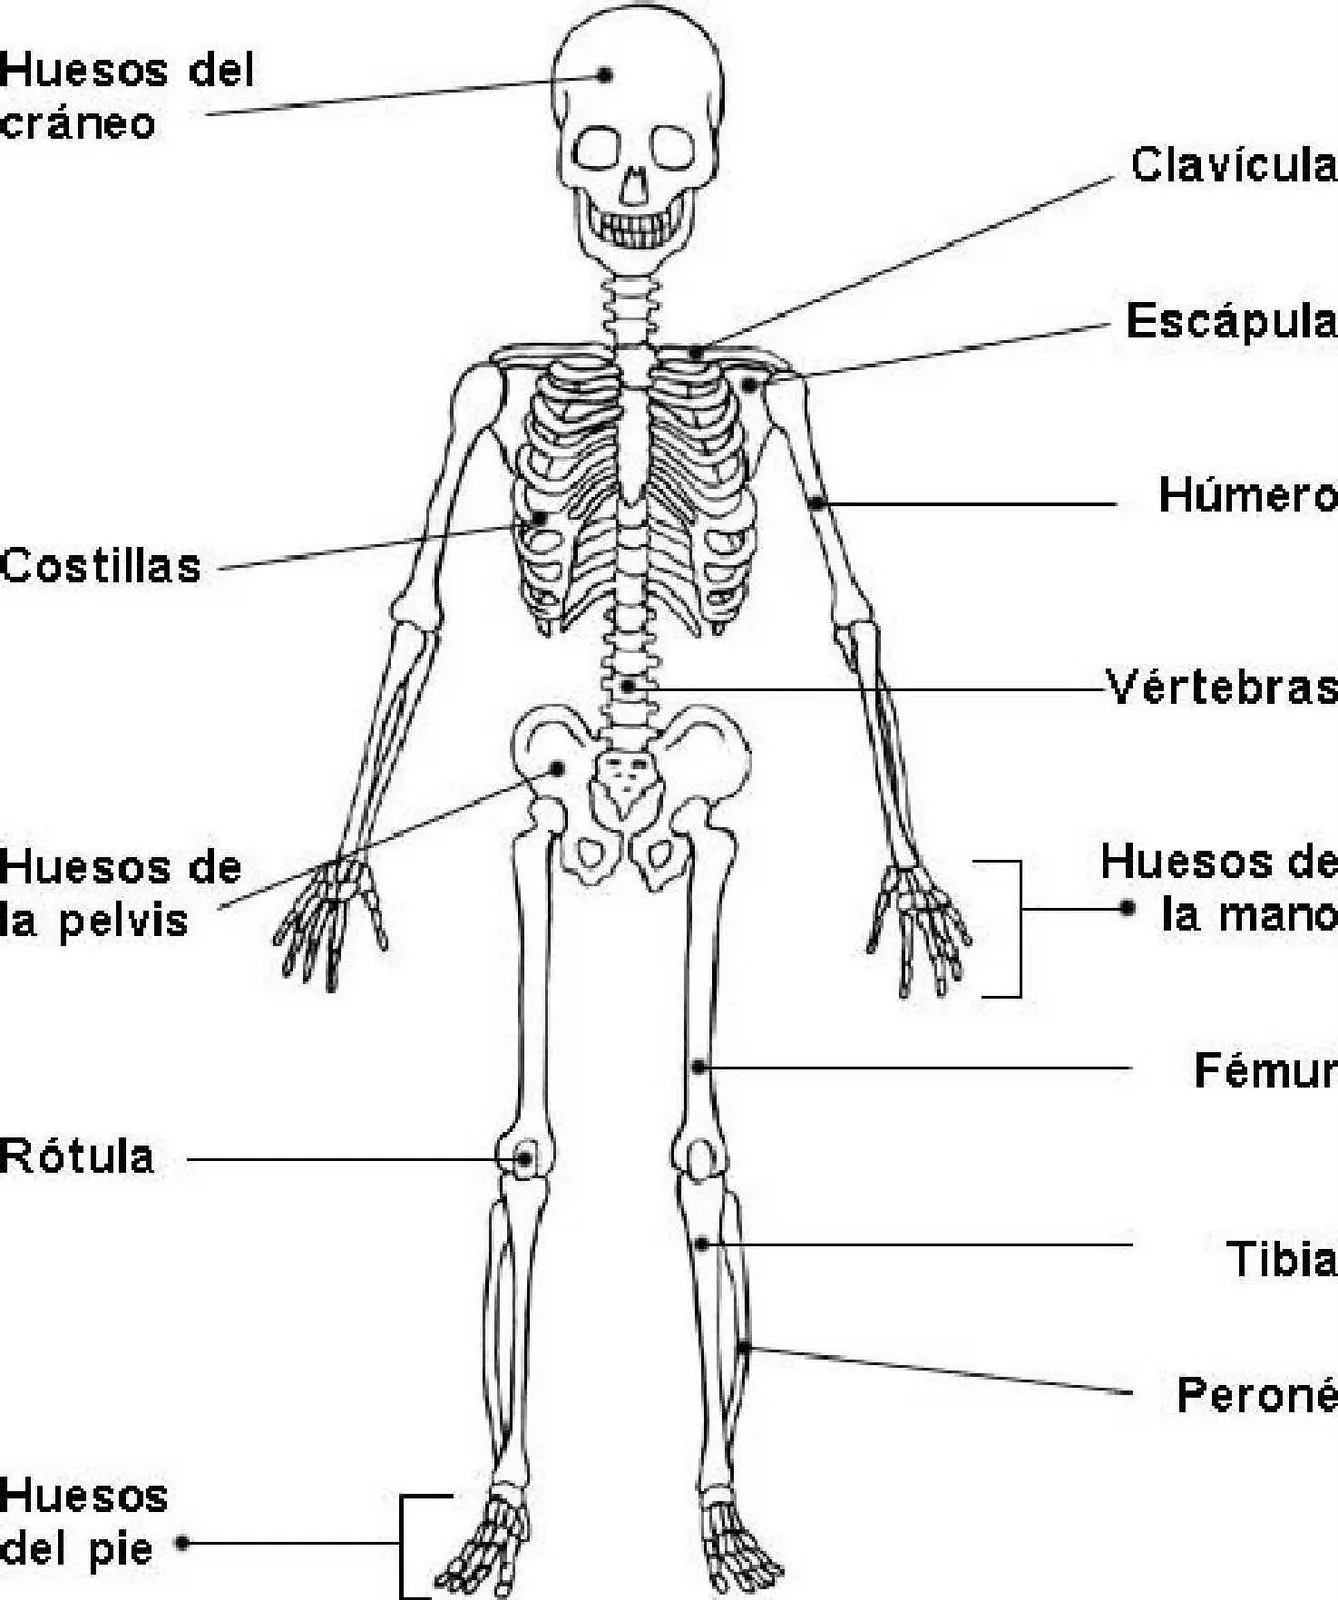 cuerpo humano dibujos de los huesos del craneo y sus partes pelauts